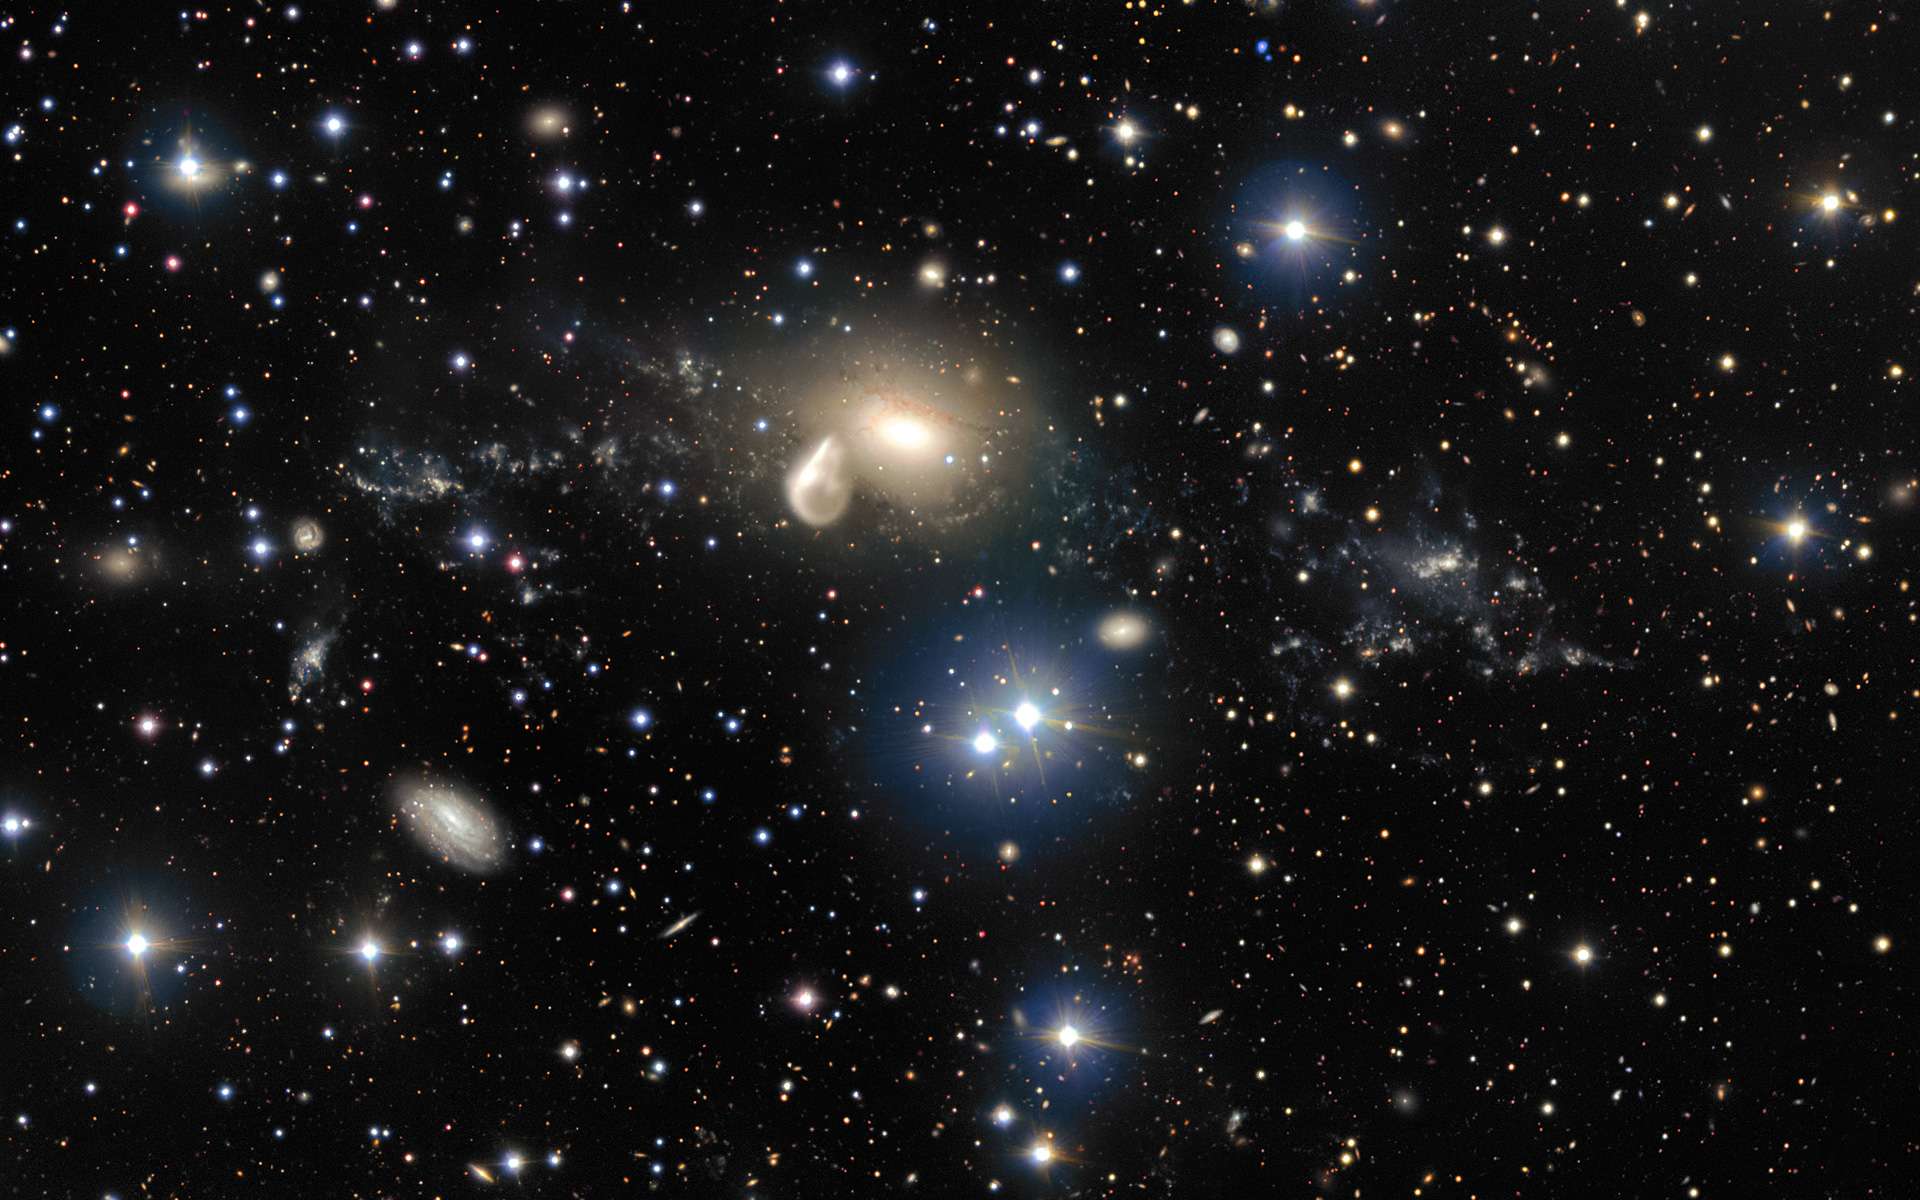 Cette image, acquise par le Très Grand Télescope (VLT) de l'Eso, à l'Observatoire du Cerro Paranal (Chili), révèle en détail les spectaculaires conséquences d'une collision cosmique vieille de 360 millions d'années. Parmi les débris qui entourent la galaxie elliptique NGC 5291 (au centre de l'image) figure un objet rare et mystérieux à la fois : une jeune galaxie naine (l'amas lumineux à droite). Cet objet offre aux astronomes l'excellente opportunité de mieux connaître ce type de galaxies, largement répandues dans l'univers jeune, mais généralement trop distantes et trop peu lumineuses pour pouvoir être observées au moyen des télescopes actuels. Ce spectacle pourrait prendre fin dans 2,8 milliards d'années avec un Big Rip. © Eso